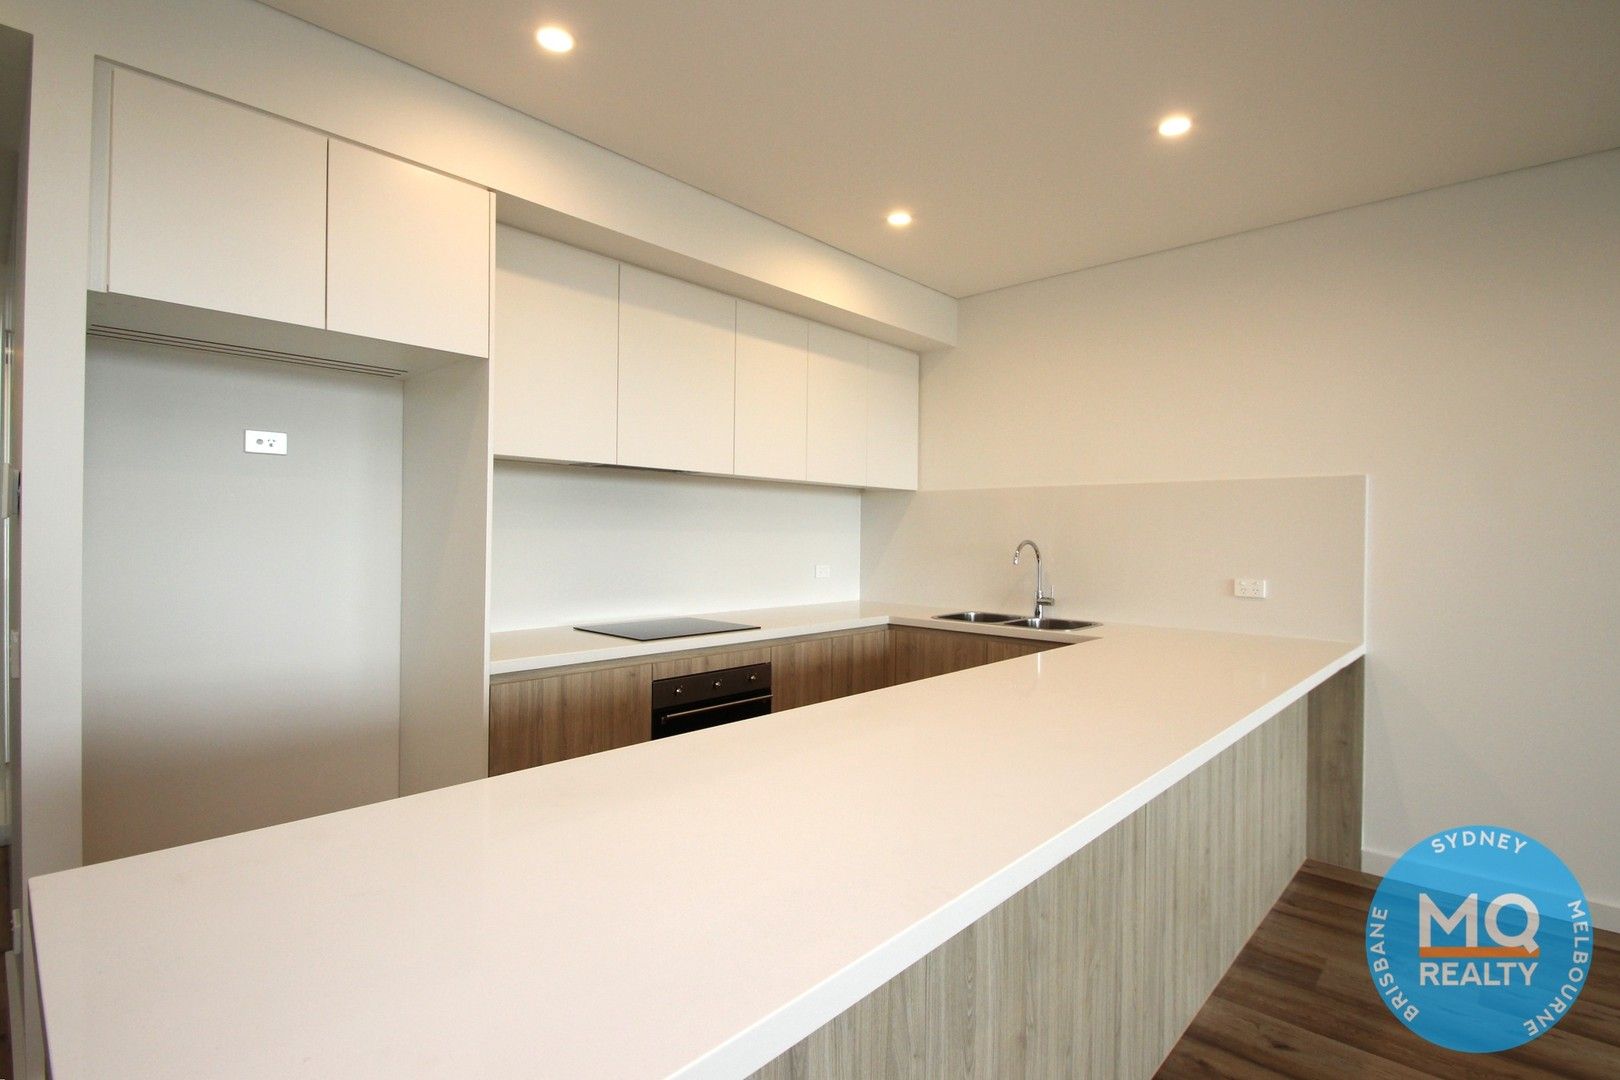 2 bedrooms Apartment / Unit / Flat in 901/20-24 Bridge Street LIDCOMBE NSW, 2141